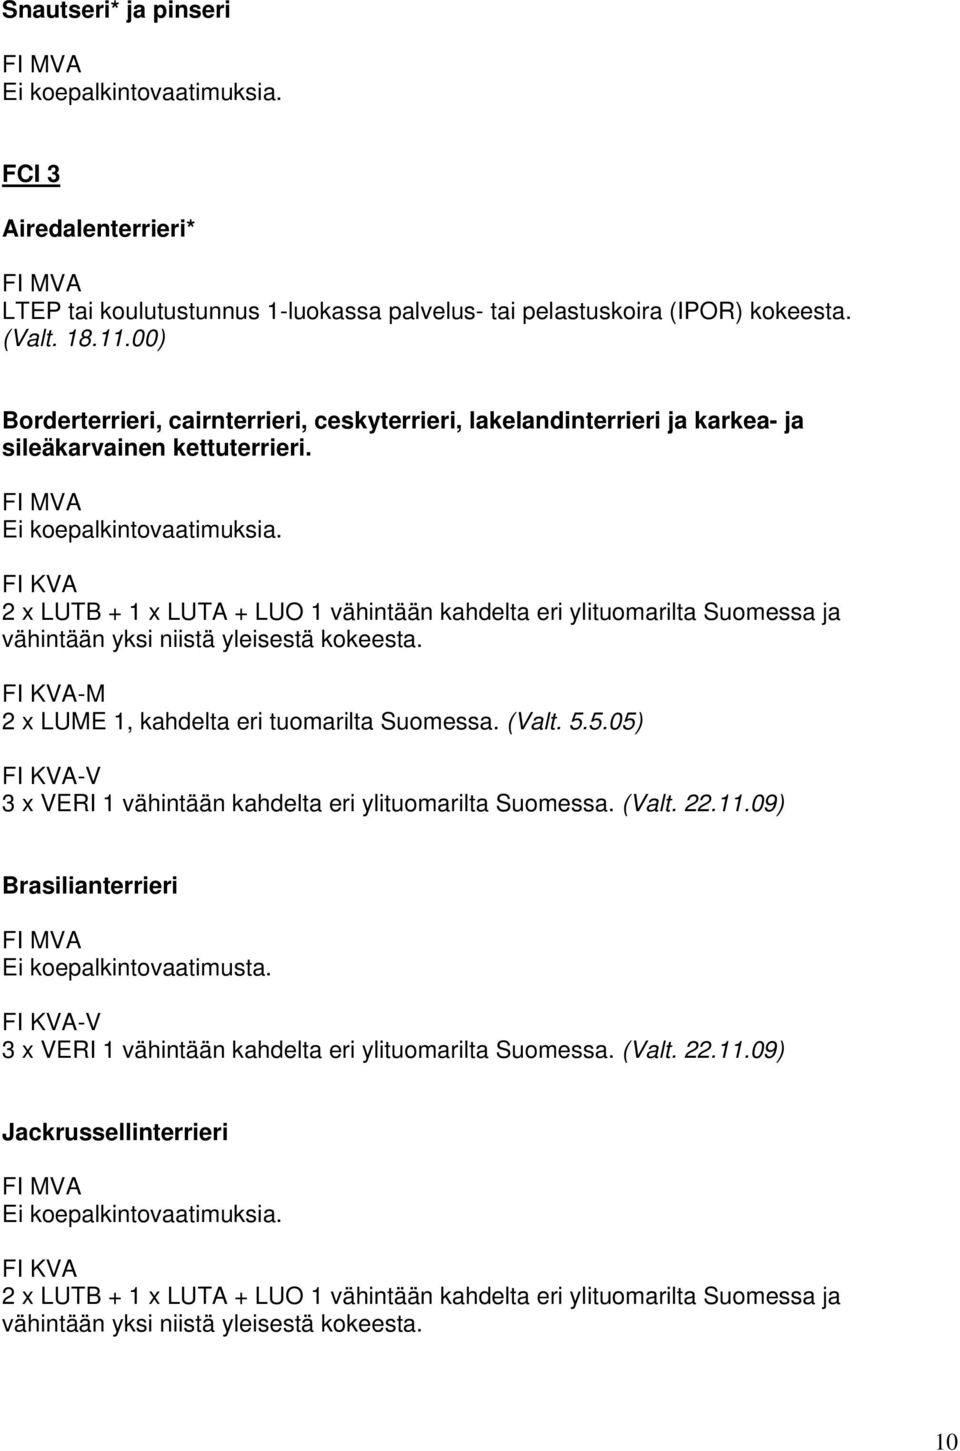 2 x LUTB + 1 x LUTA + LUO 1 vähintään kahdelta eri ylituomarilta Suomessa ja vähintään yksi niistä yleisestä kokeesta. -M 2 x LUME 1, kahdelta eri tuomarilta Suomessa. (Valt. 5.